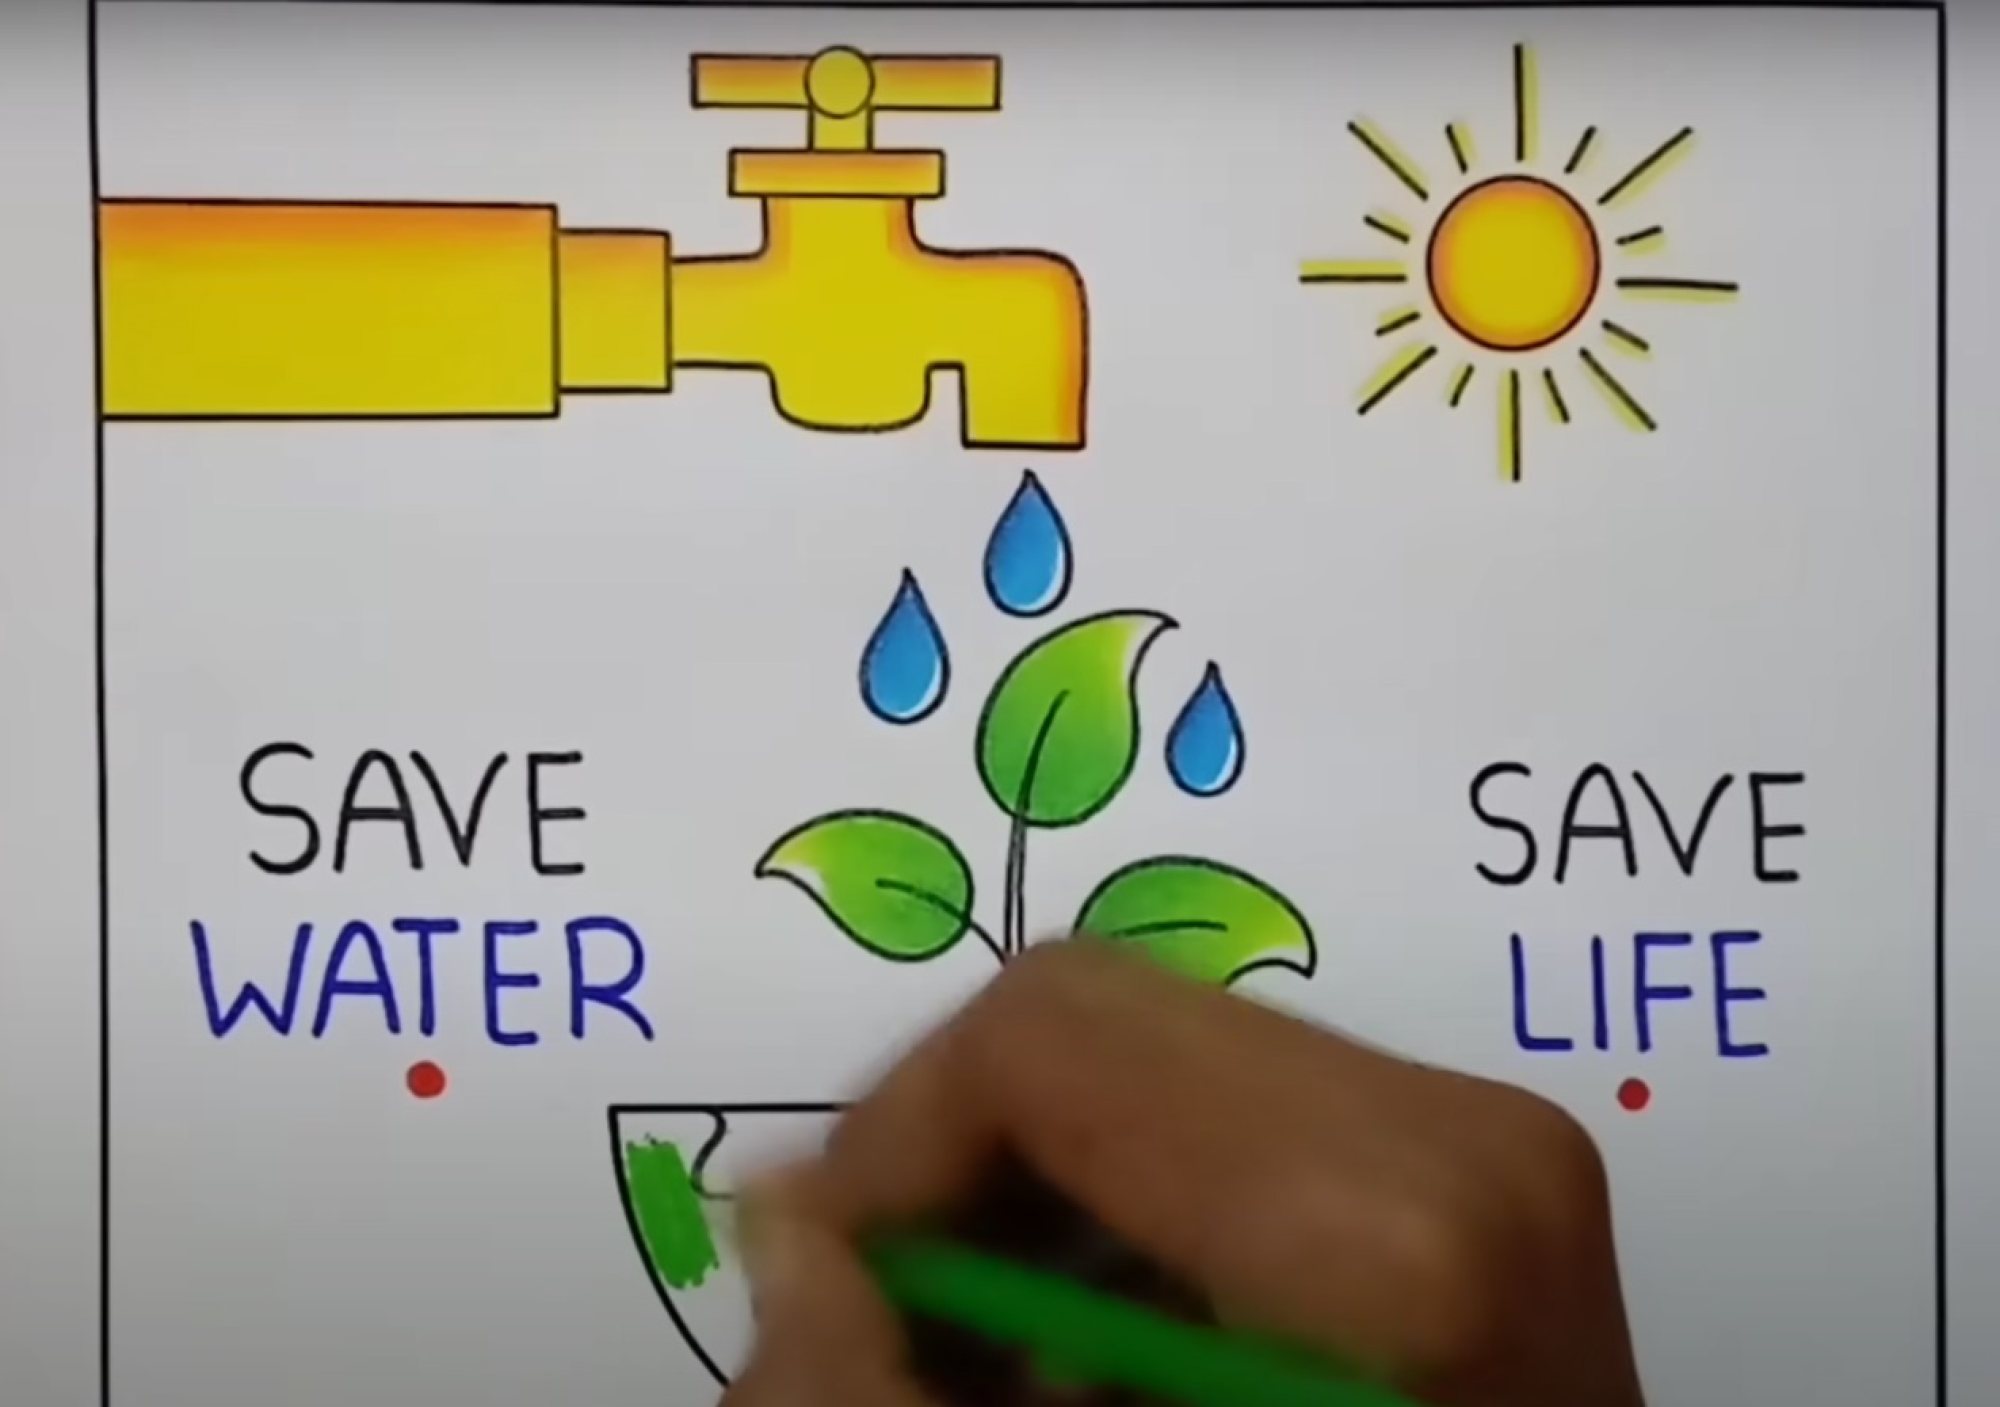 Subhashree Maharana on LinkedIn: save water save life-saigonsouth.com.vn